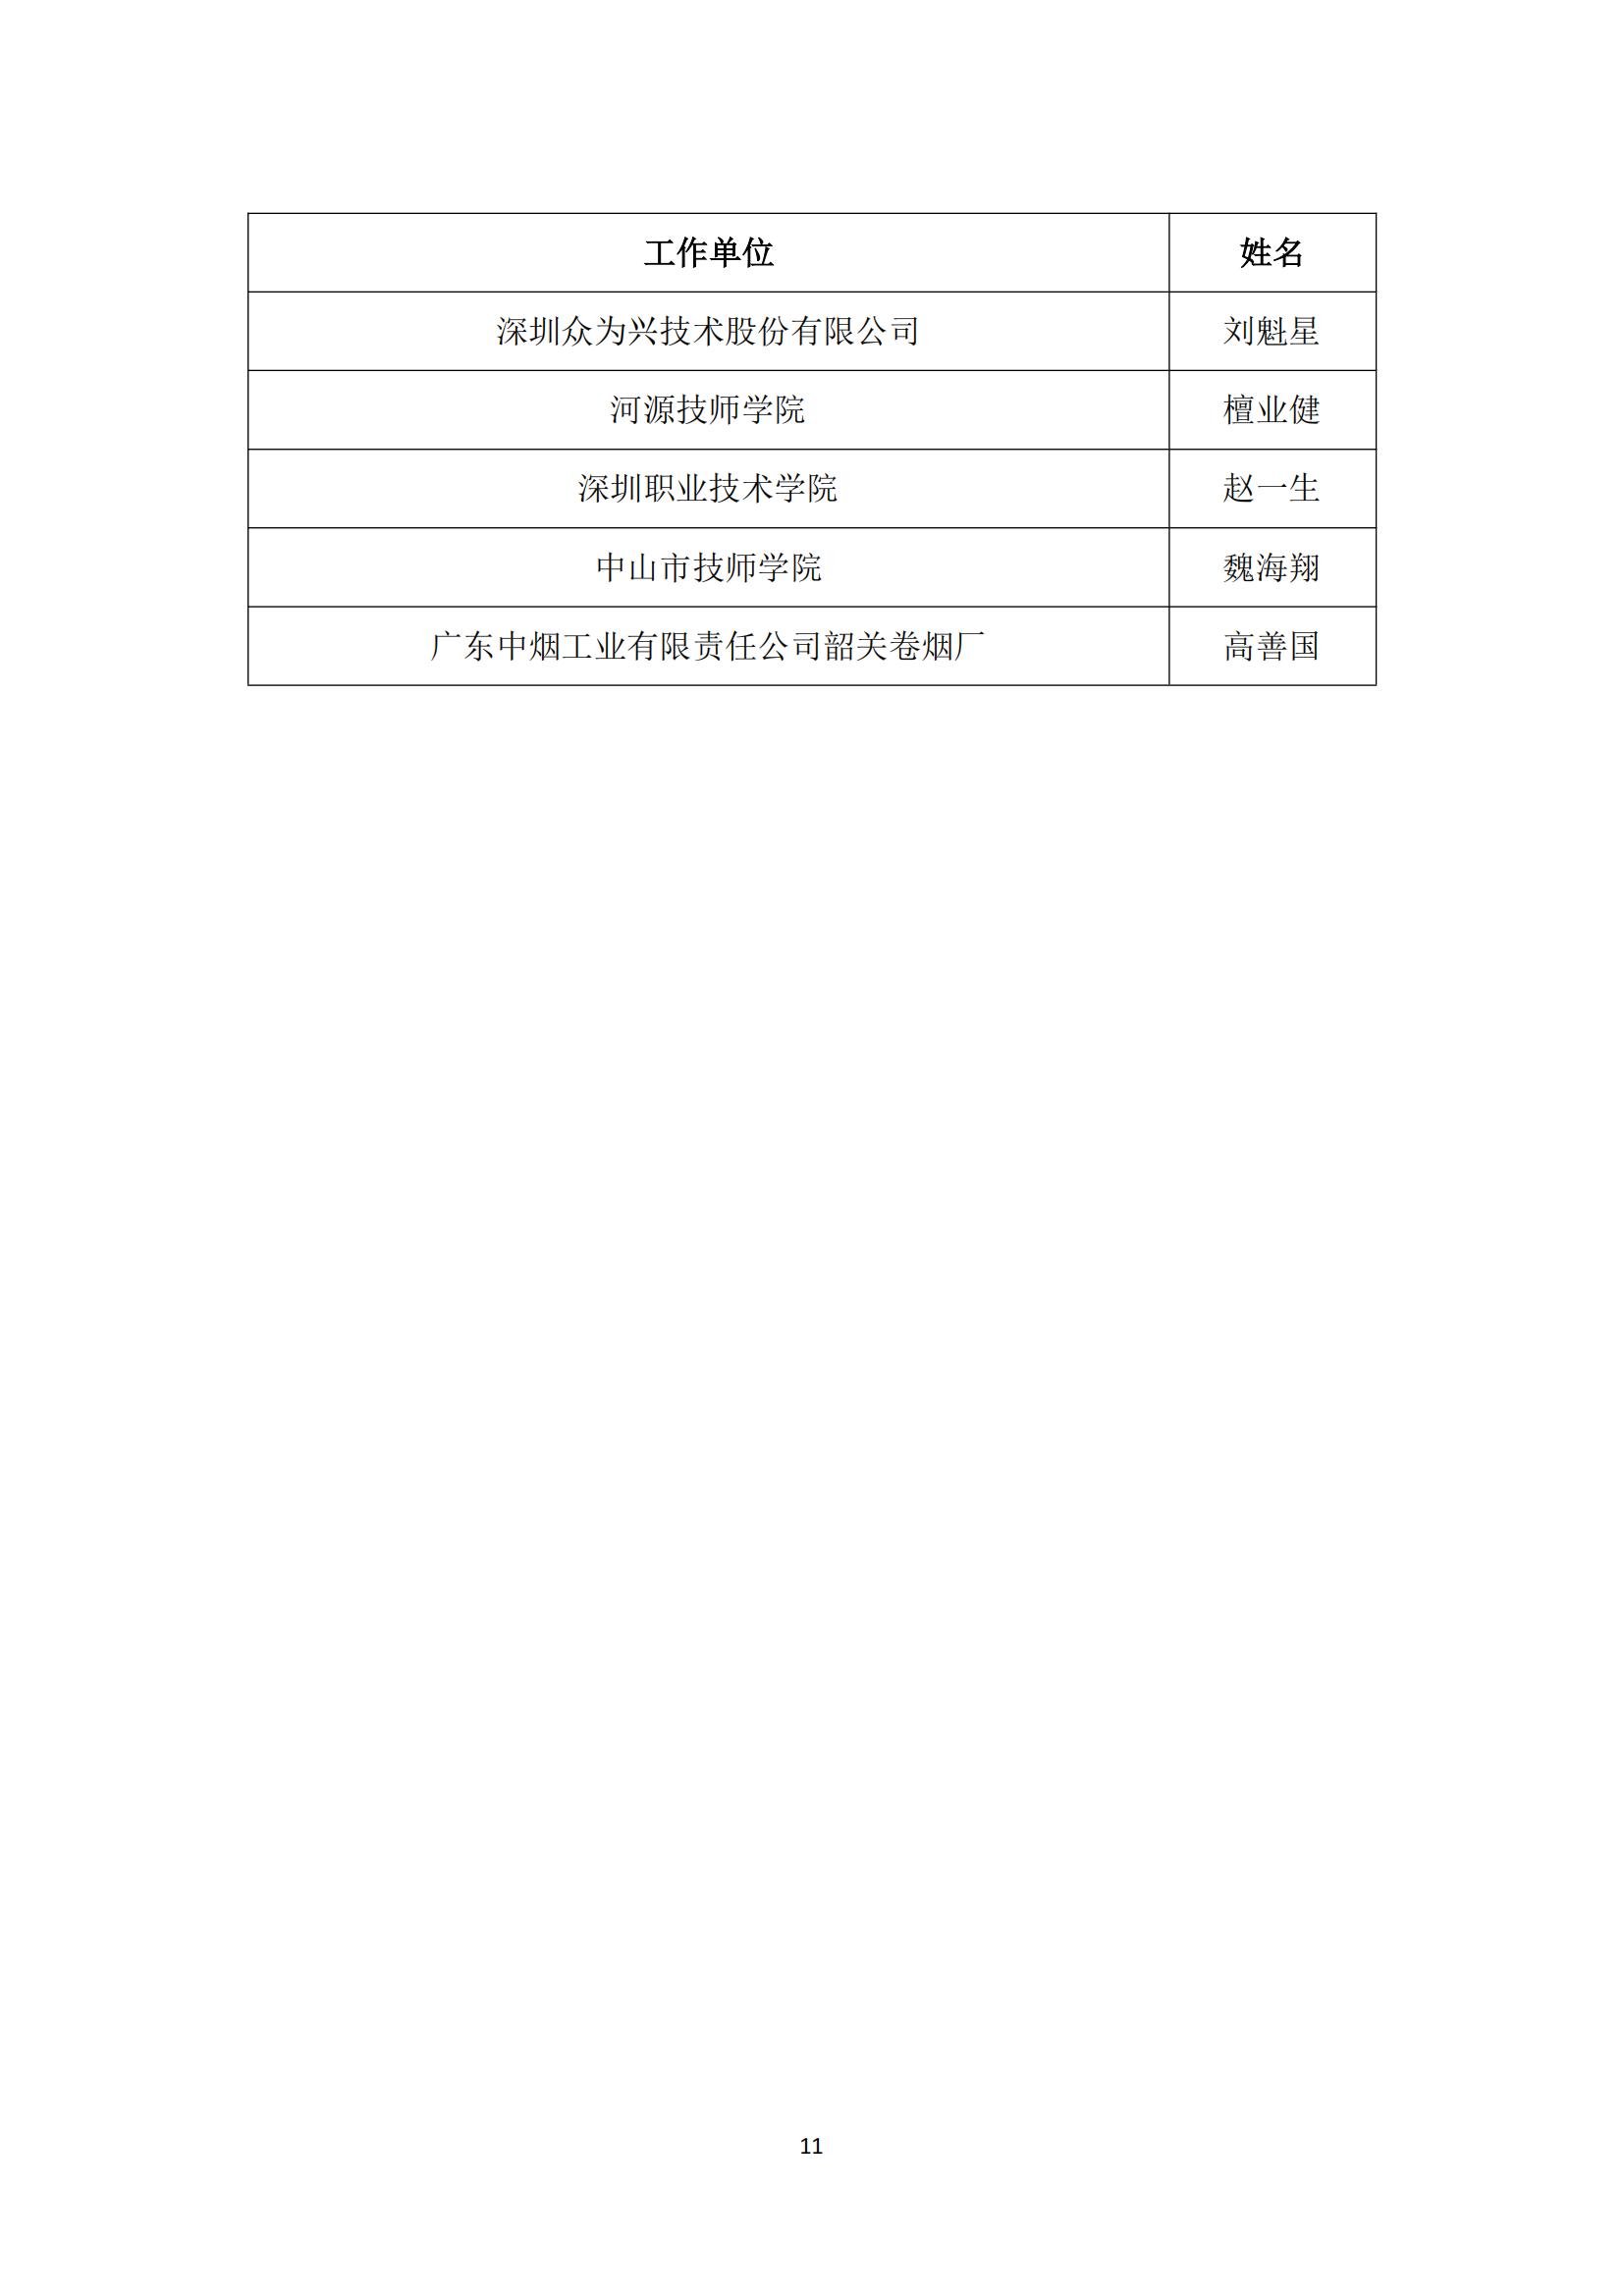 2017 年中国技能大赛——广东省可编程序控制系统设计师（机电一体化）职业技能竞赛_10.jpg